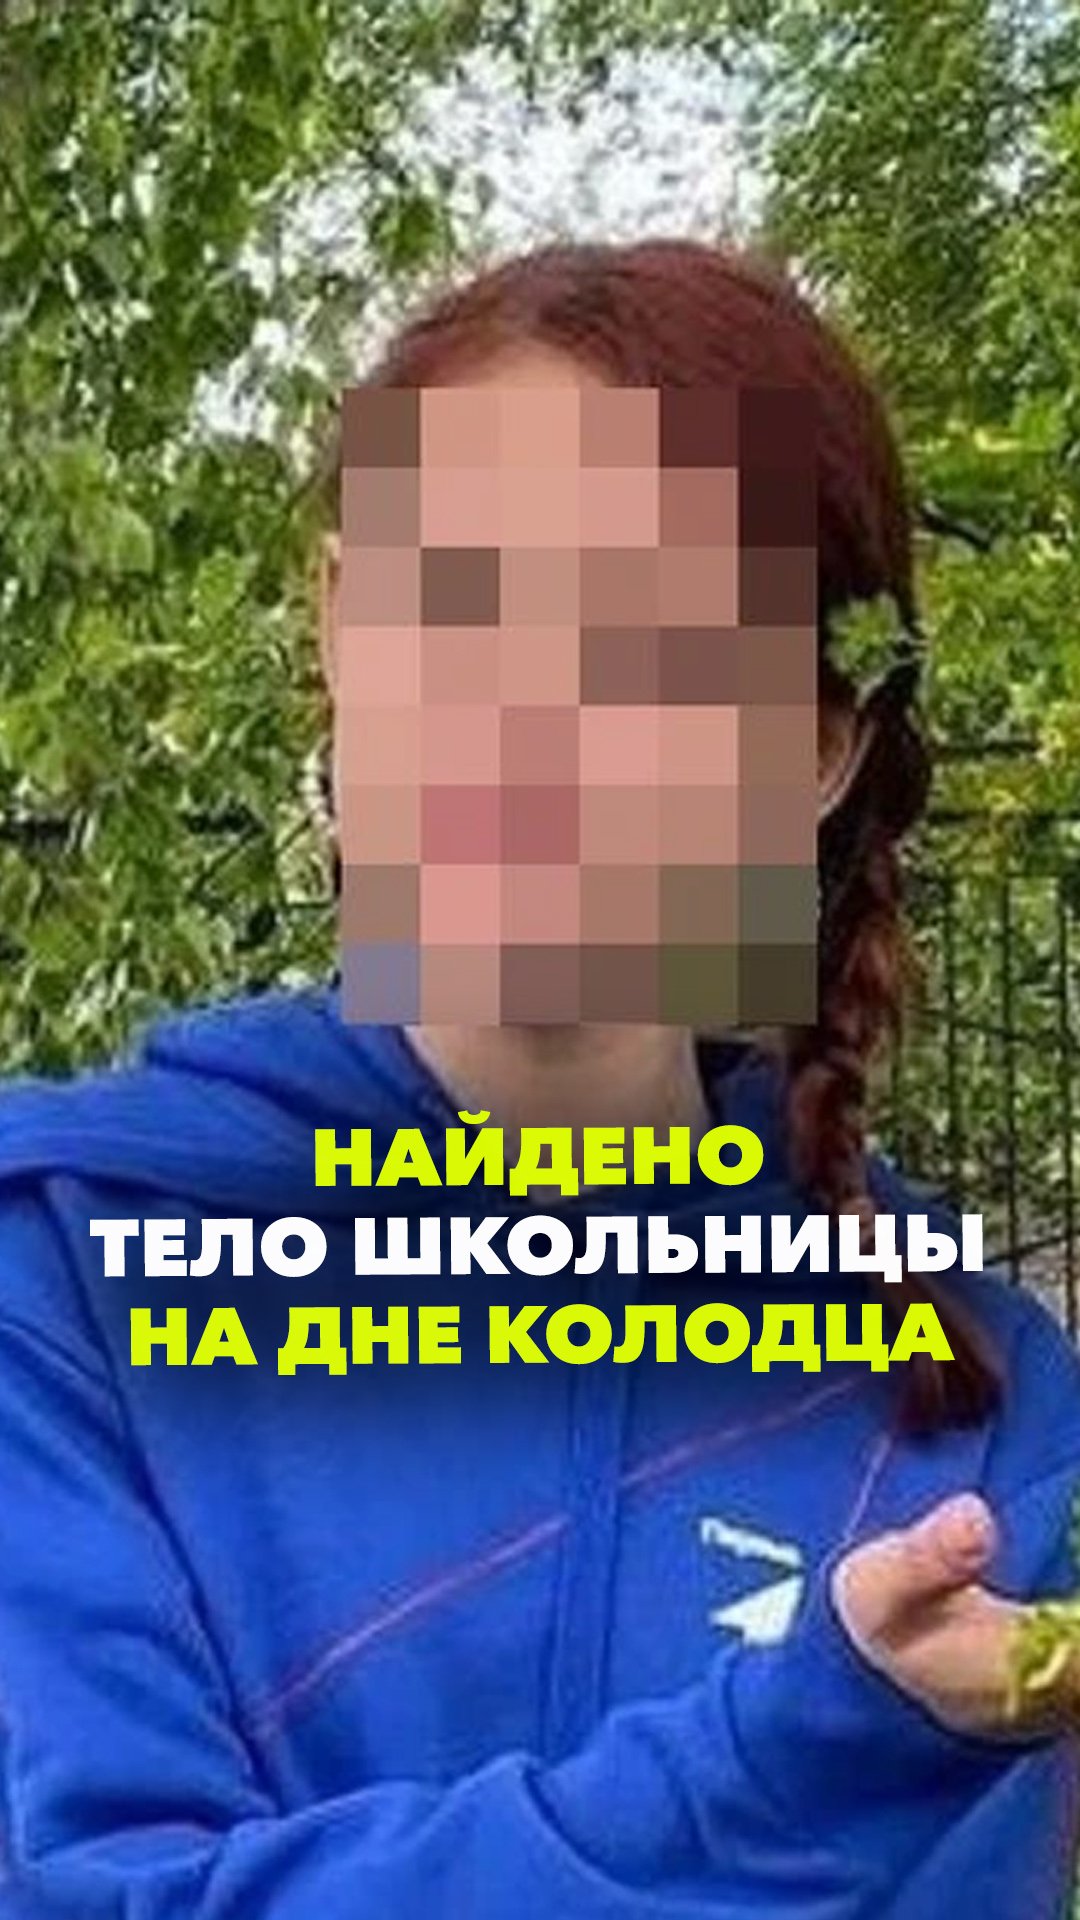 Тело школьницы нашли в колодце: в Кузбассе задержали подозреваемого в убийстве девочки. Ранее мужчин